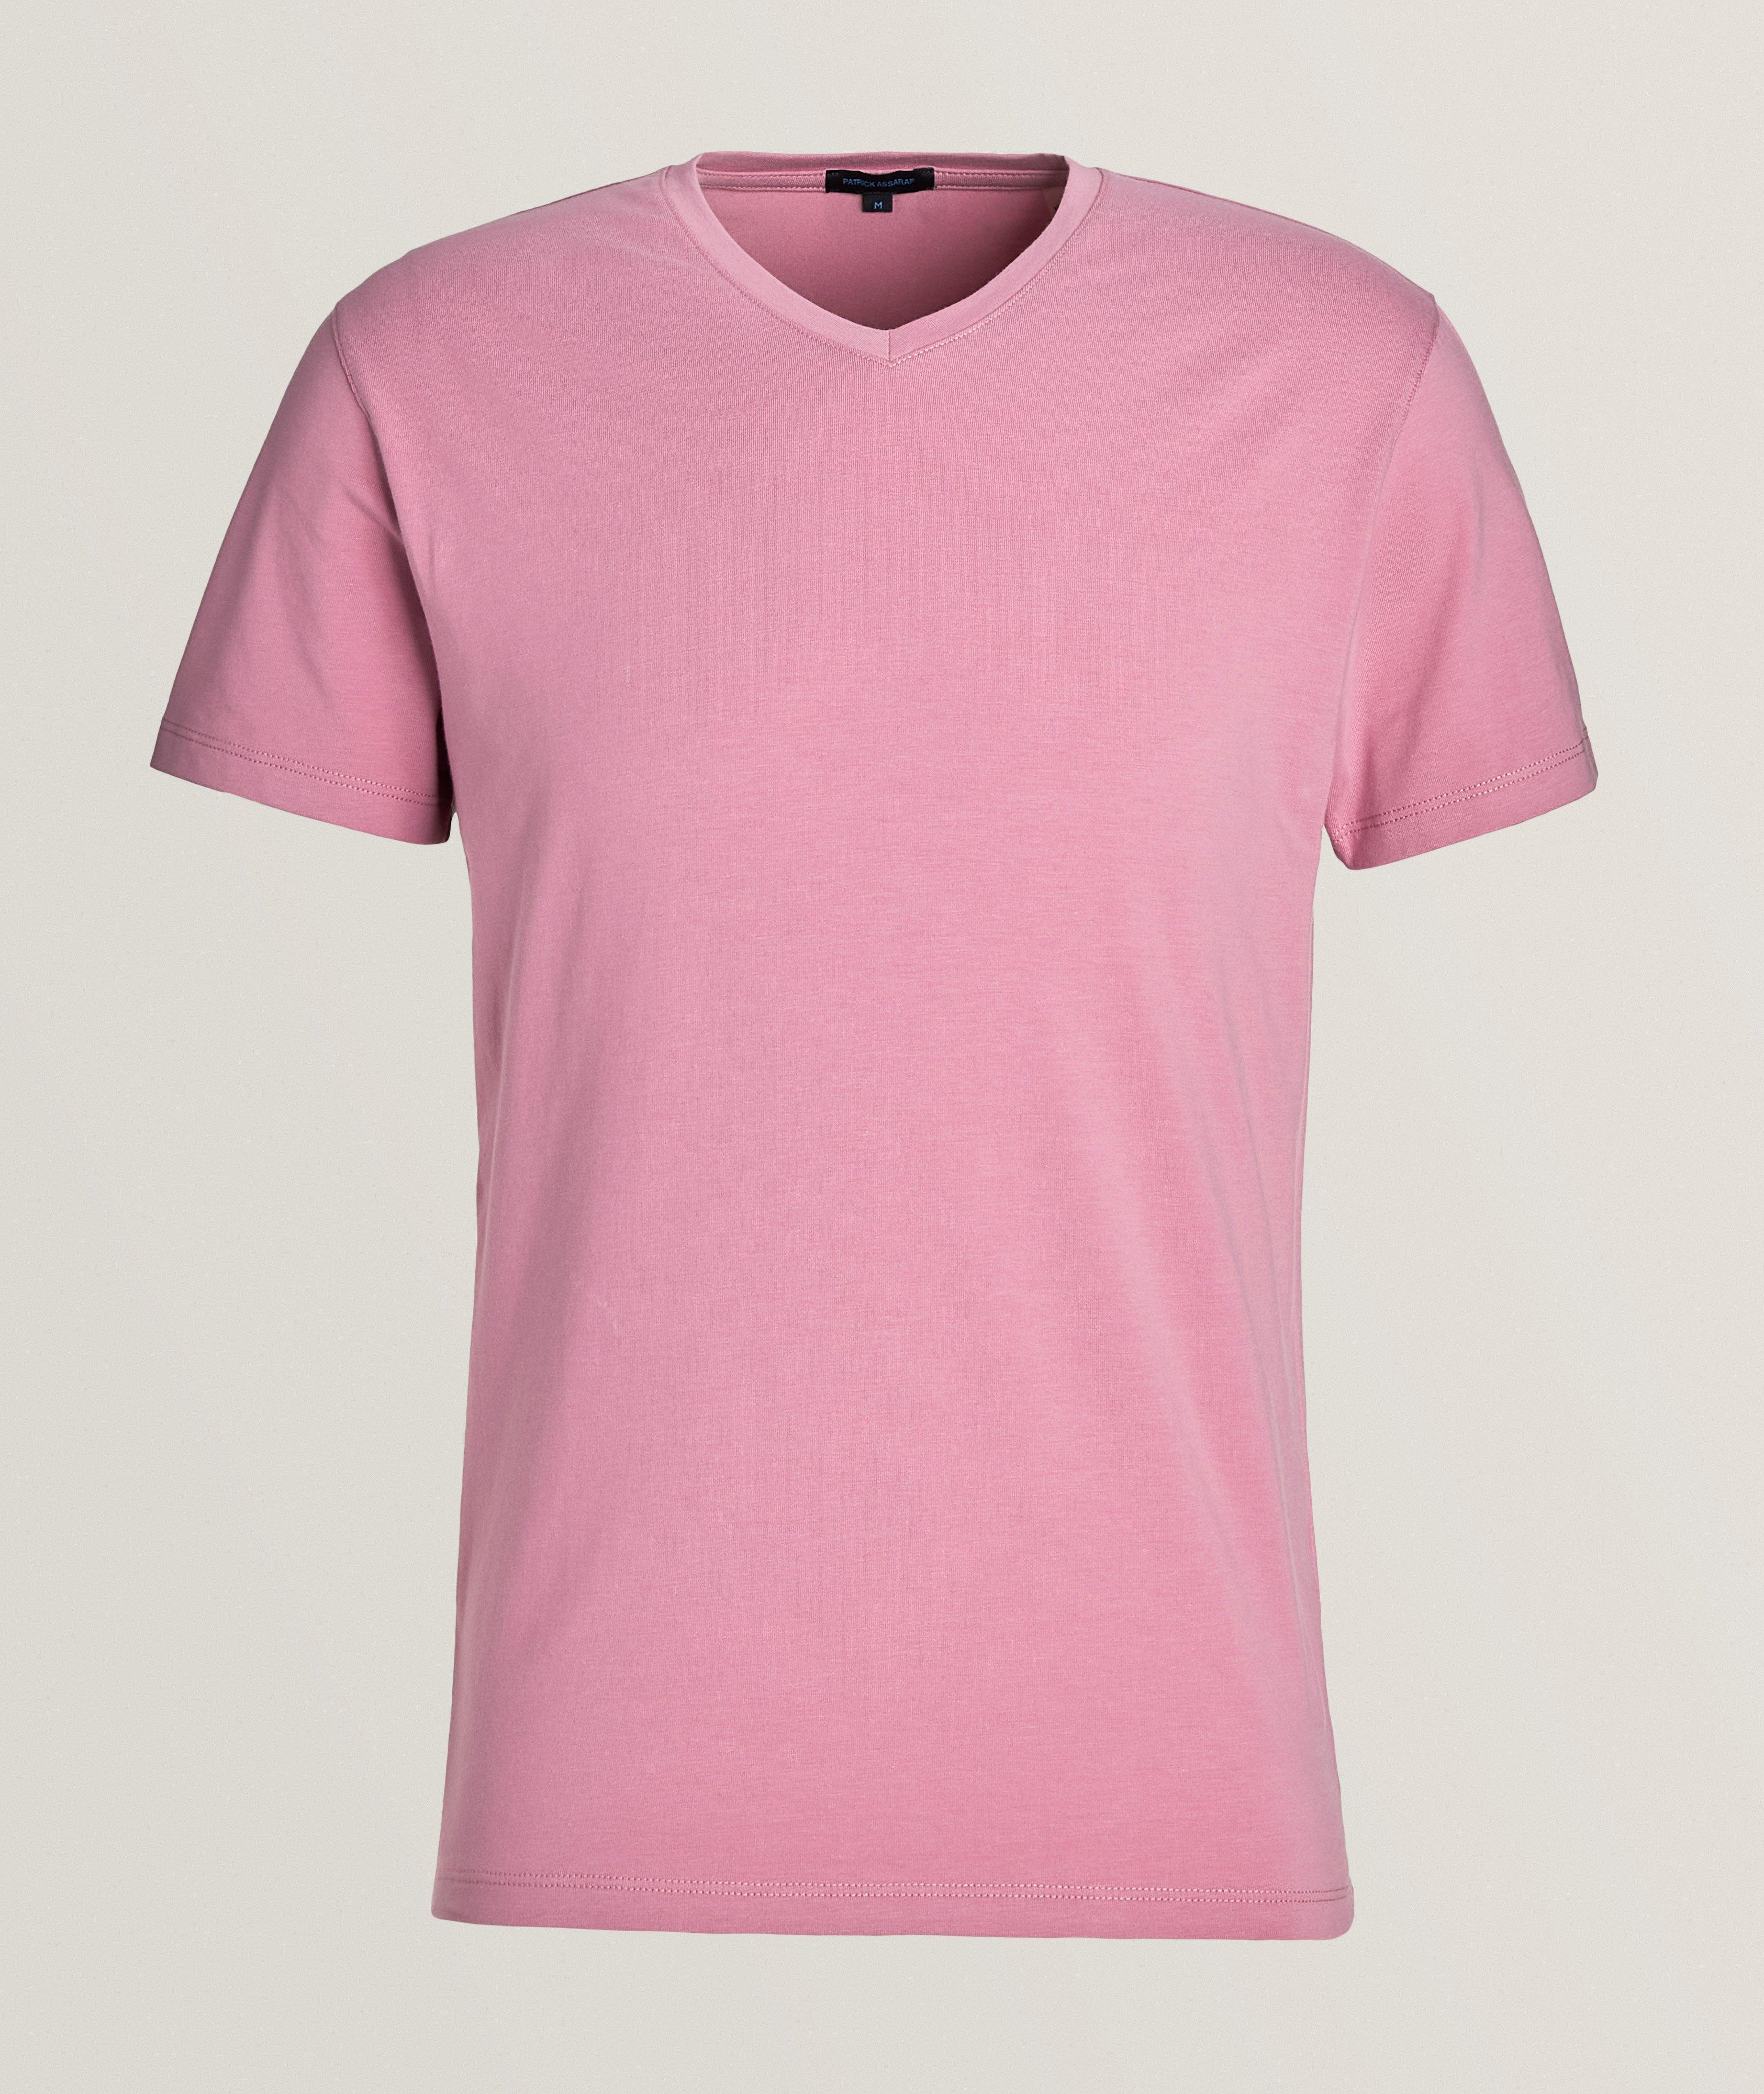 T-shirt en coton pima extensible à encolure en V image 0